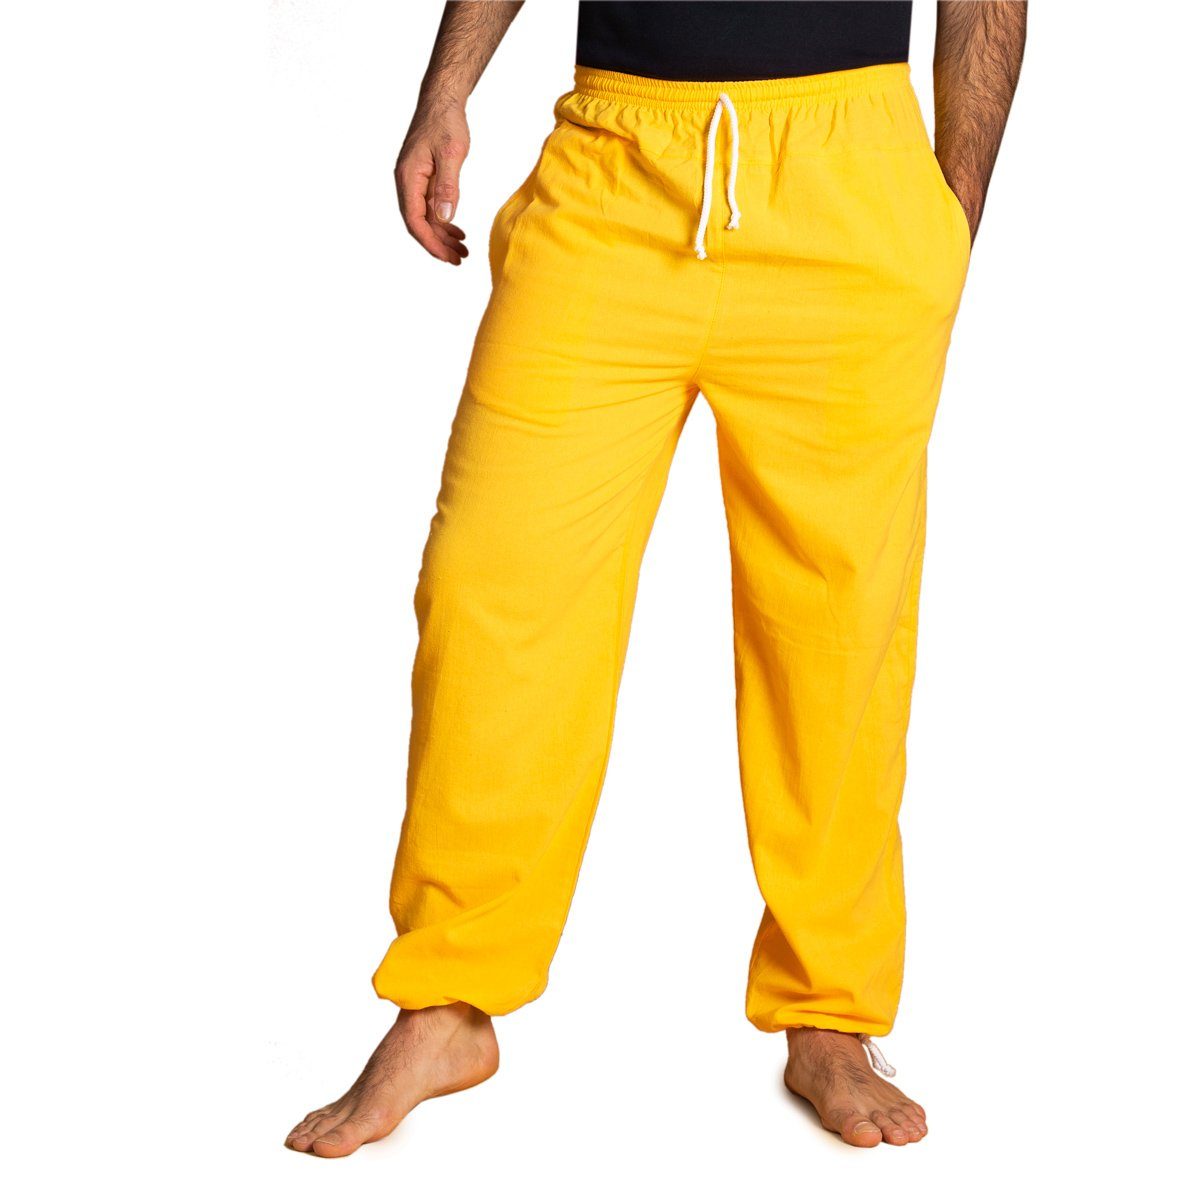 PANASIAM Wellnesshose E-Pants leichte Unisex Bundhose aus weicher Baumwolle für Damen und Herren Freizeithose mit Tunnelzug Relaxhose bequeme Sommerhose Gelb